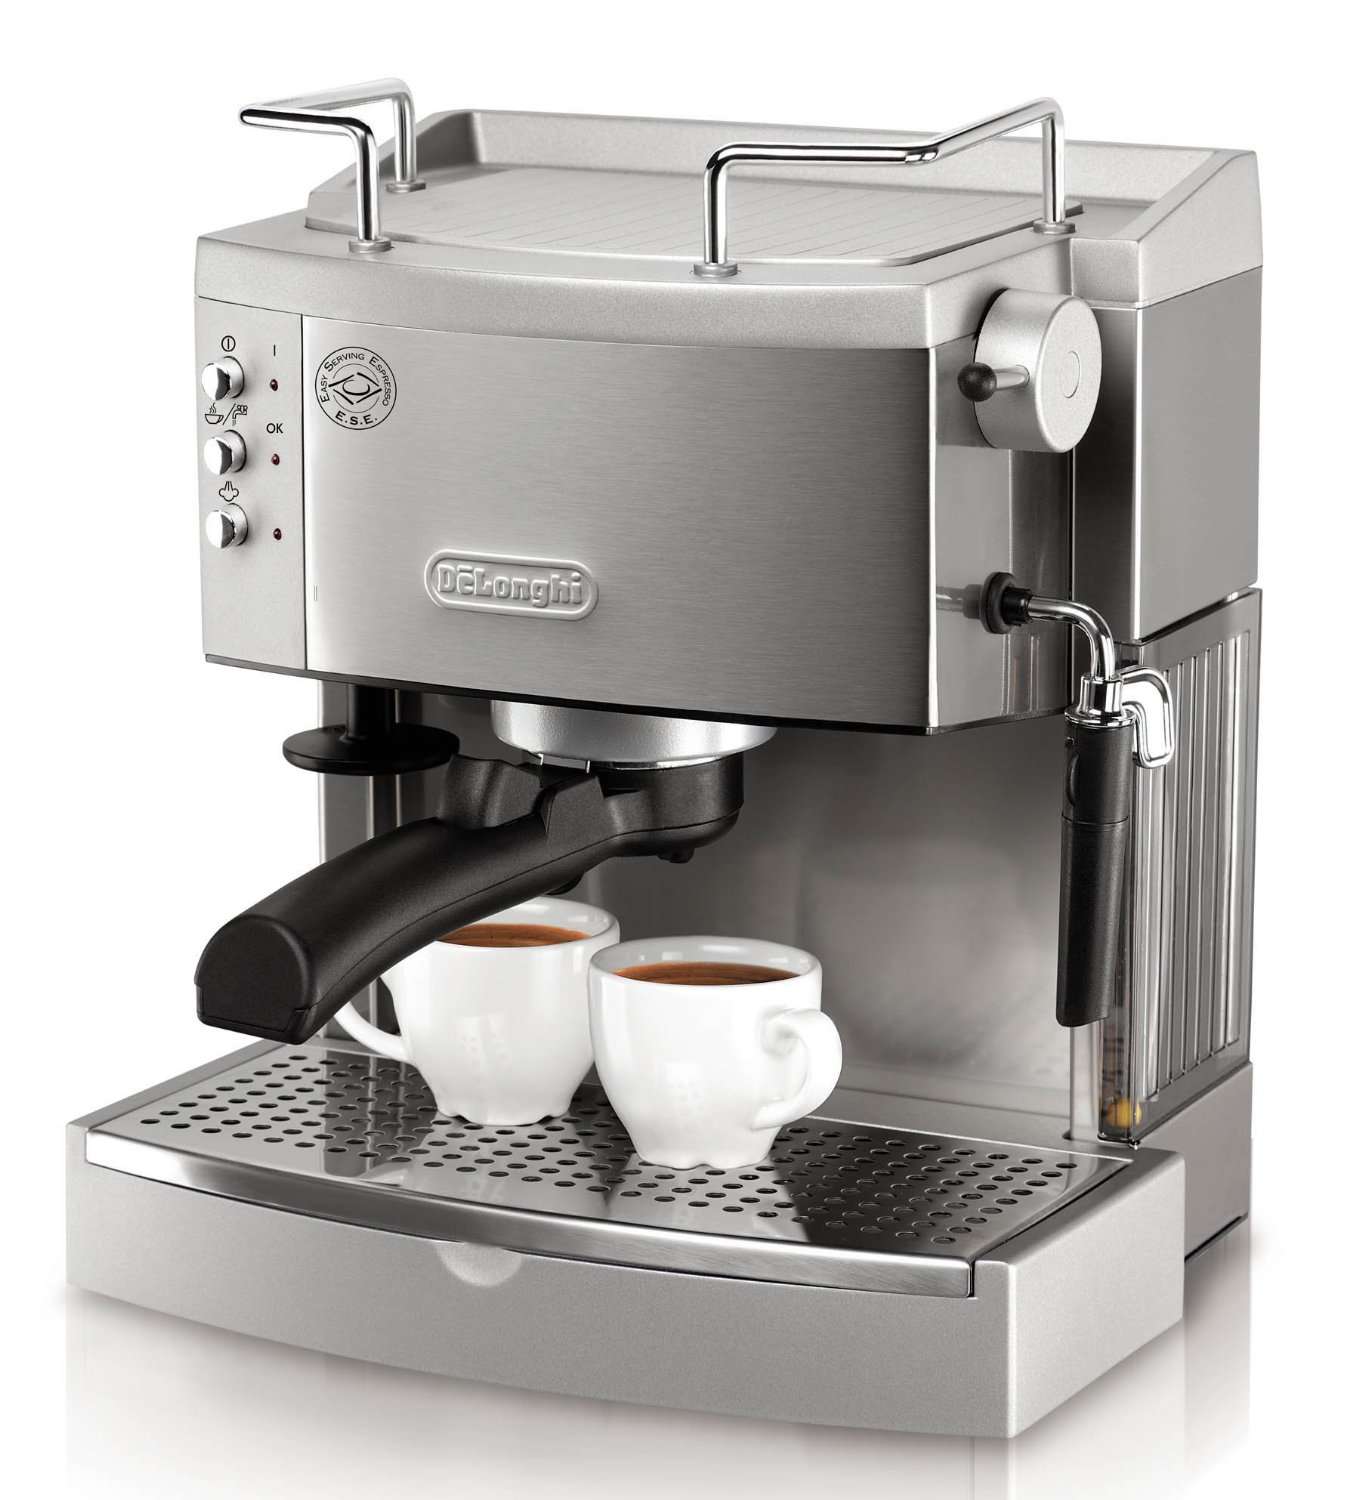 Best Home Espresso Machine Reviews